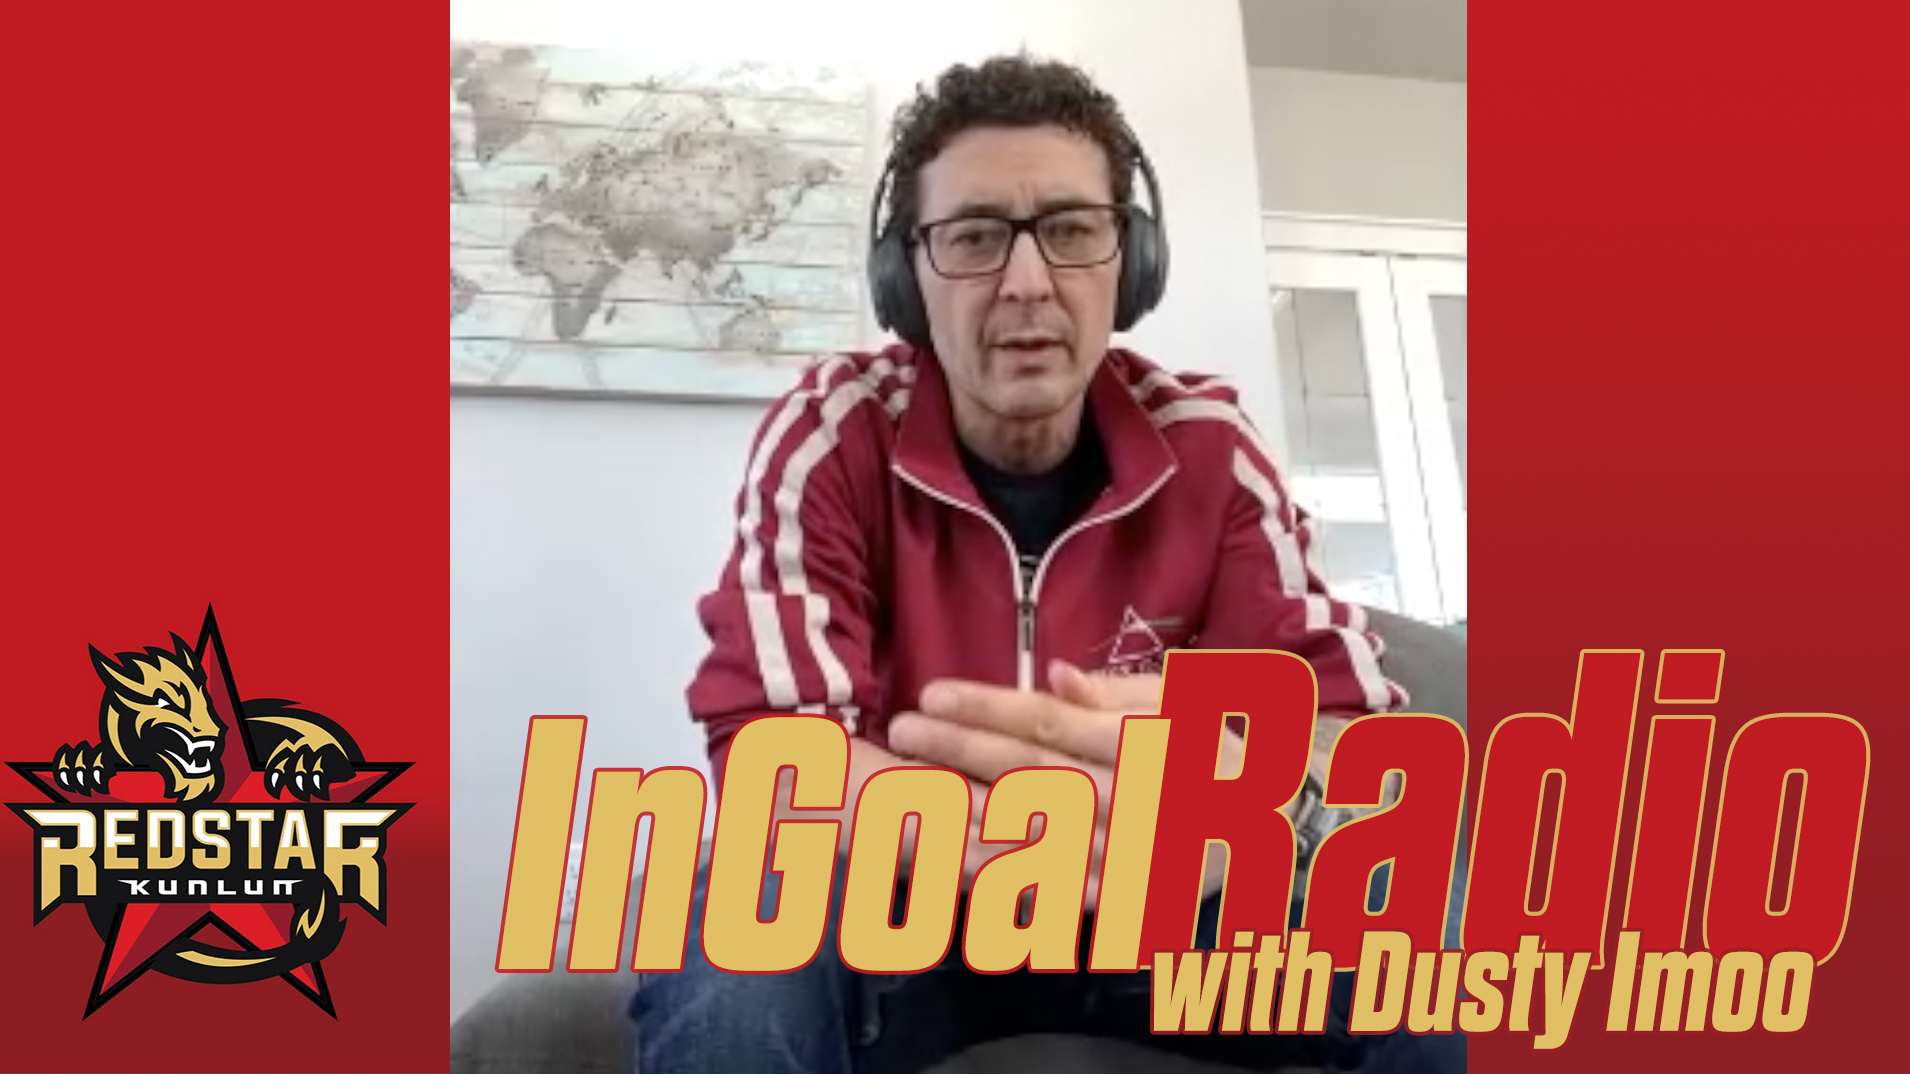 InGoal Radio EARLY: Dusty Imoo (video)